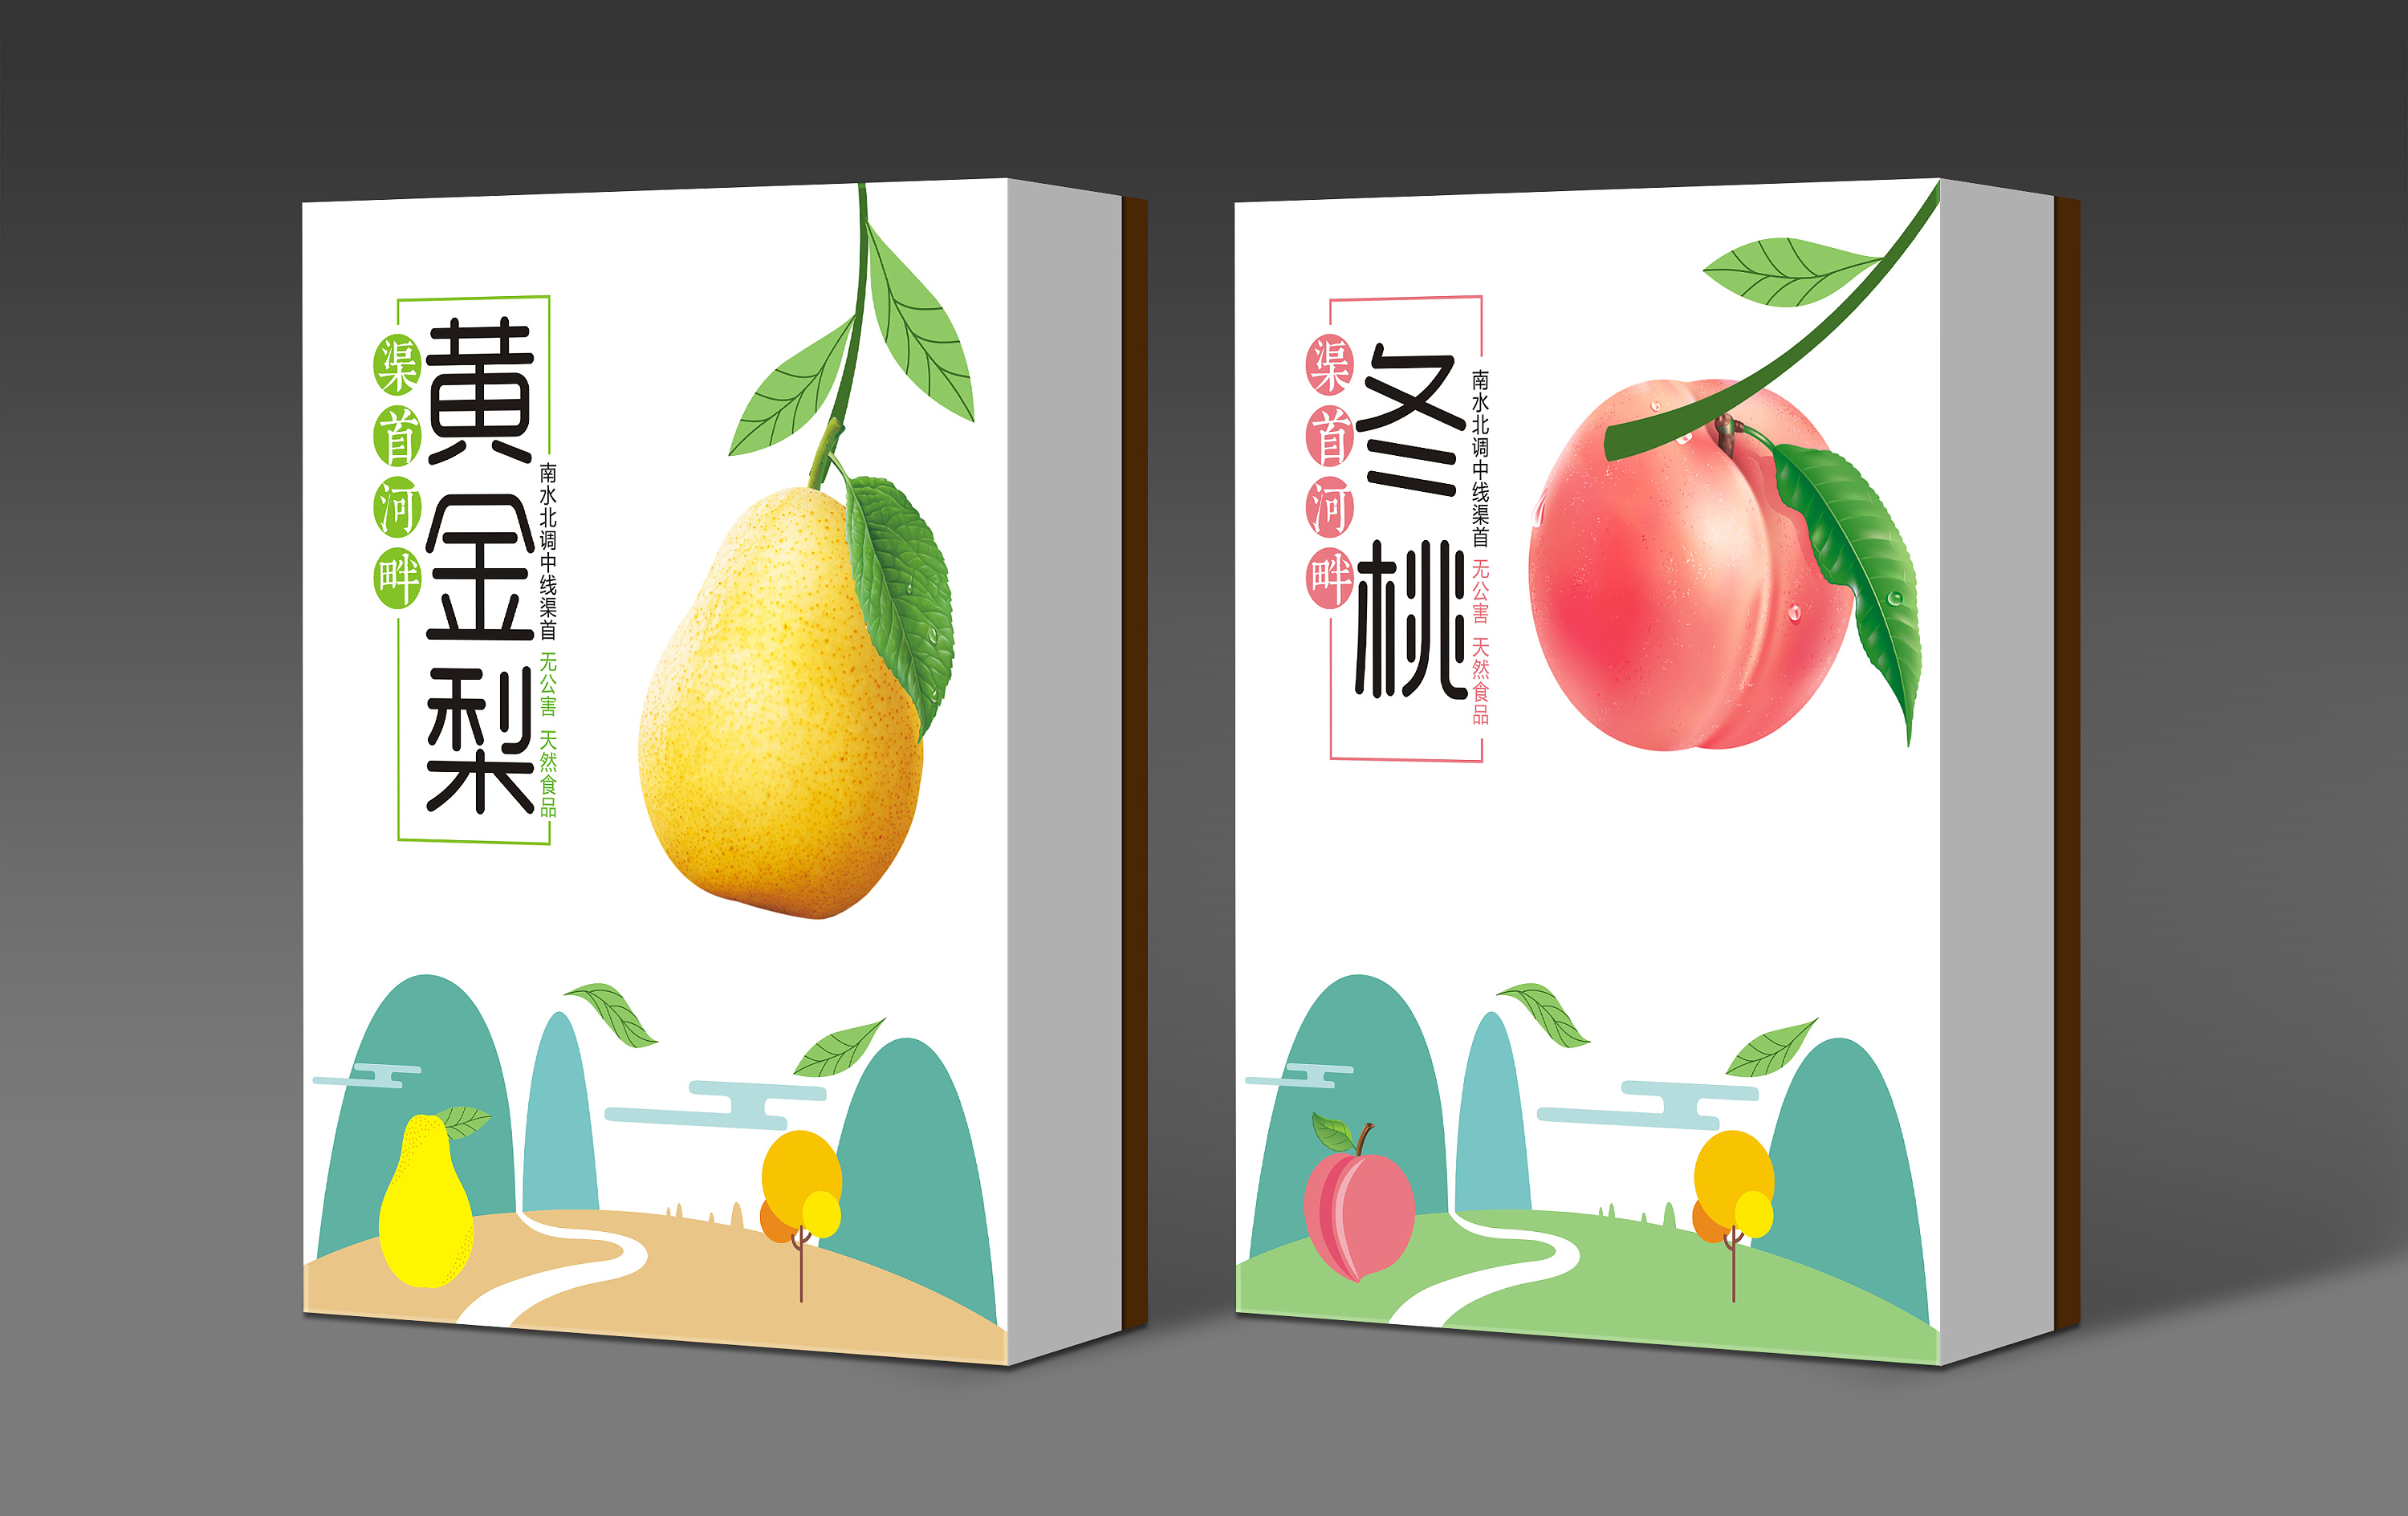 桃梨礼盒 水果礼盒 特产包装 农副产品包装 礼盒包装